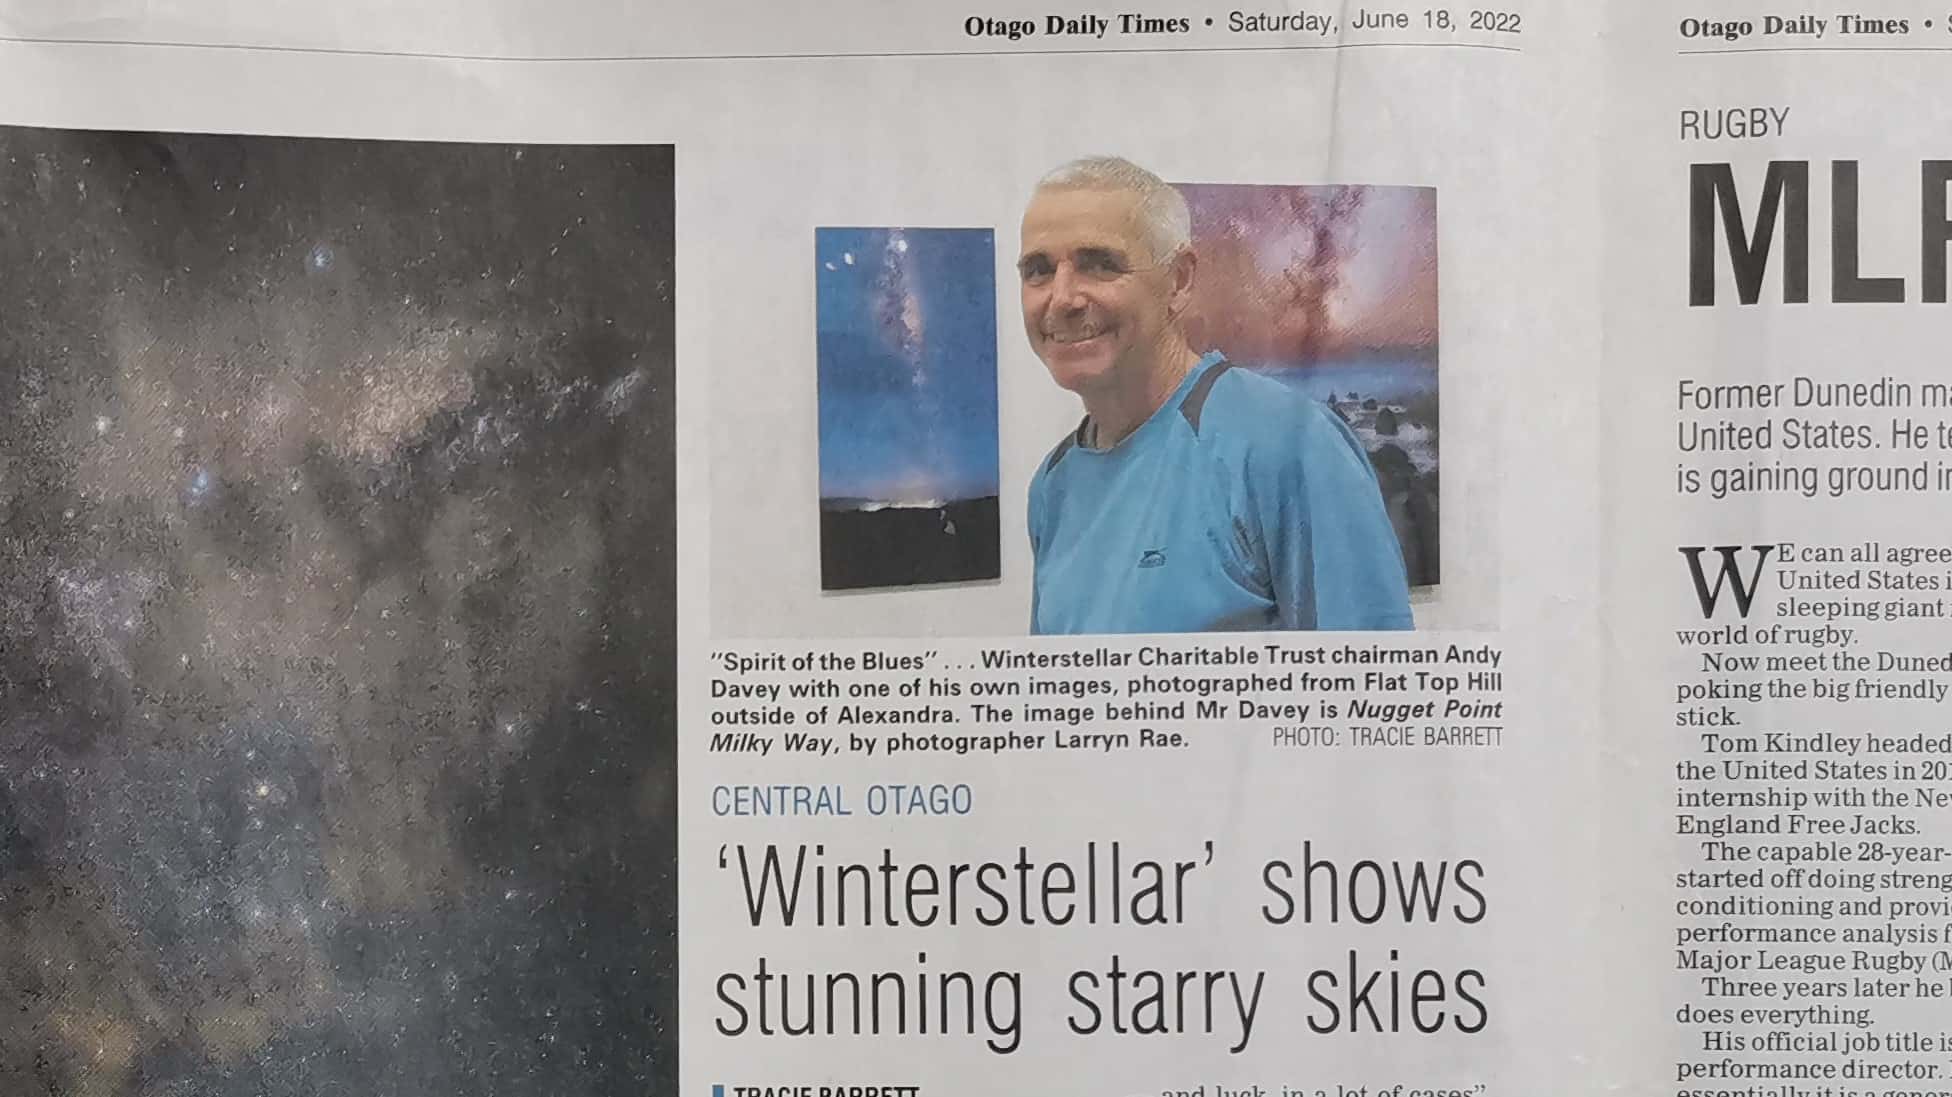 ODT: ‘Winterstellar’ shows stunning starry skies